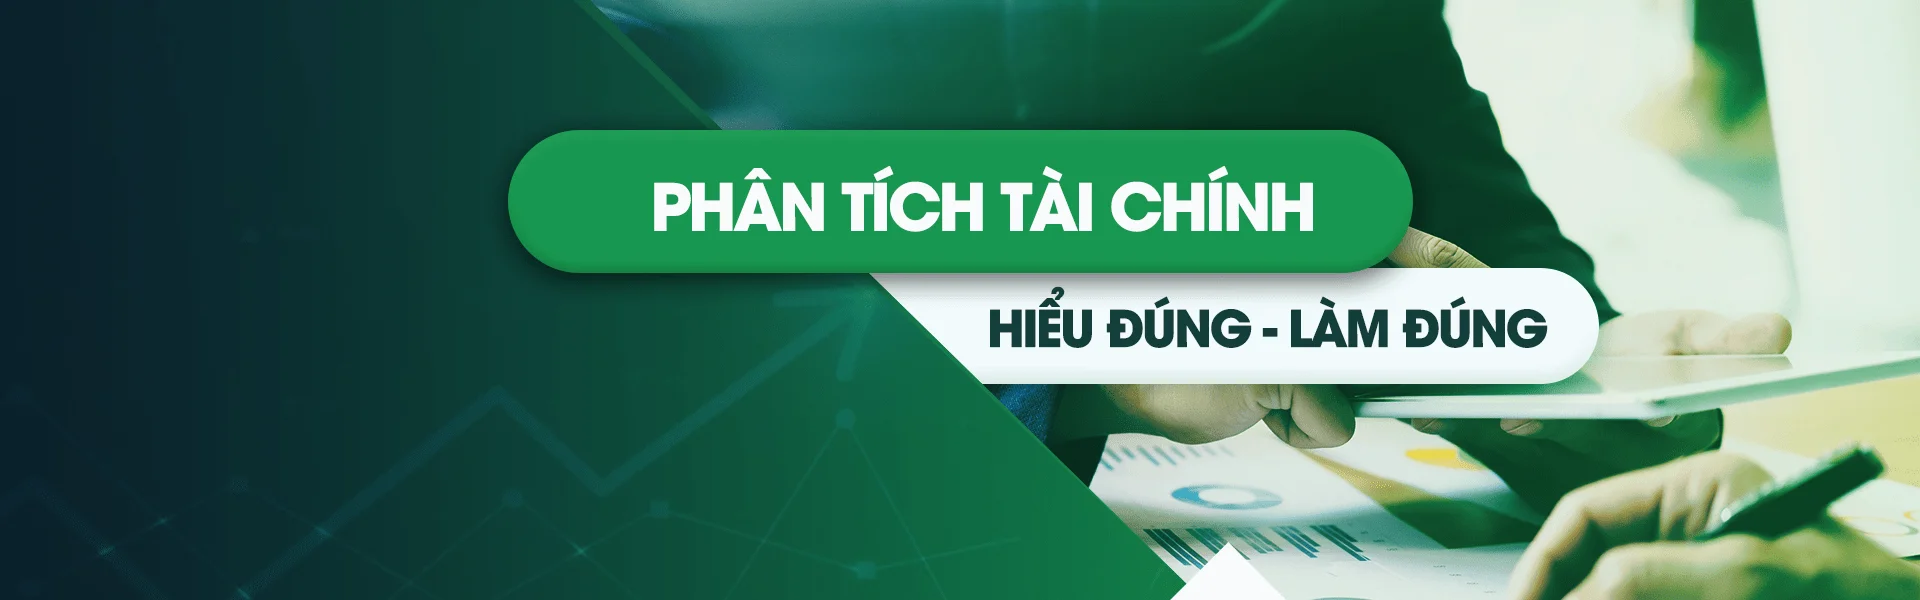 phan-tich-tai-chinh-banner